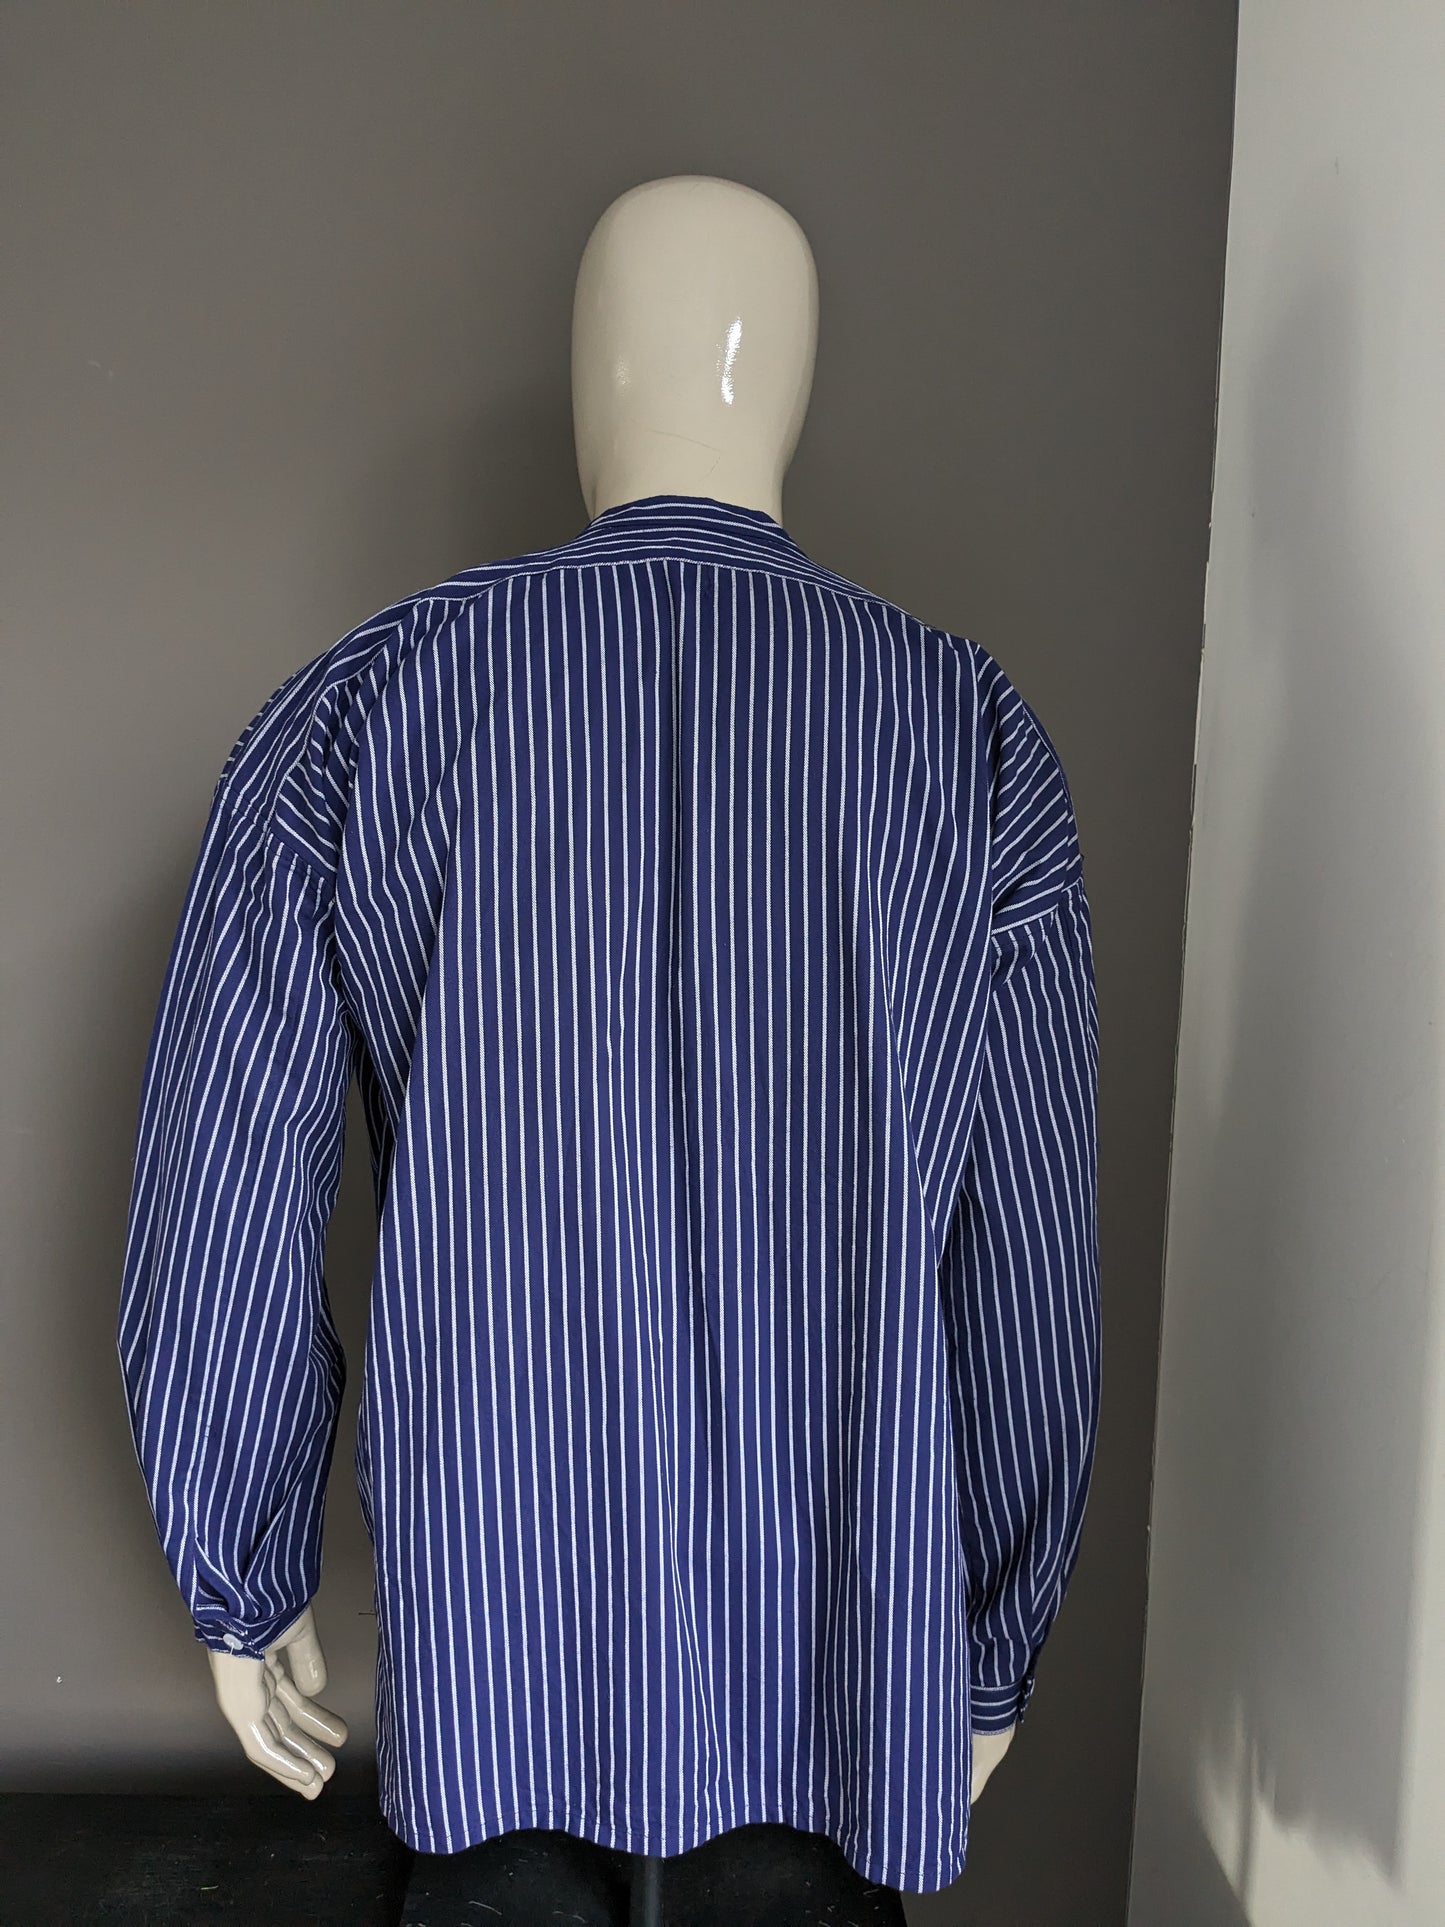 Pull / chemise / chemise de polo vintage avec collier surélevé / agriculteurs / mao. Blanc bleu rayé. Taille xxl / 2xl